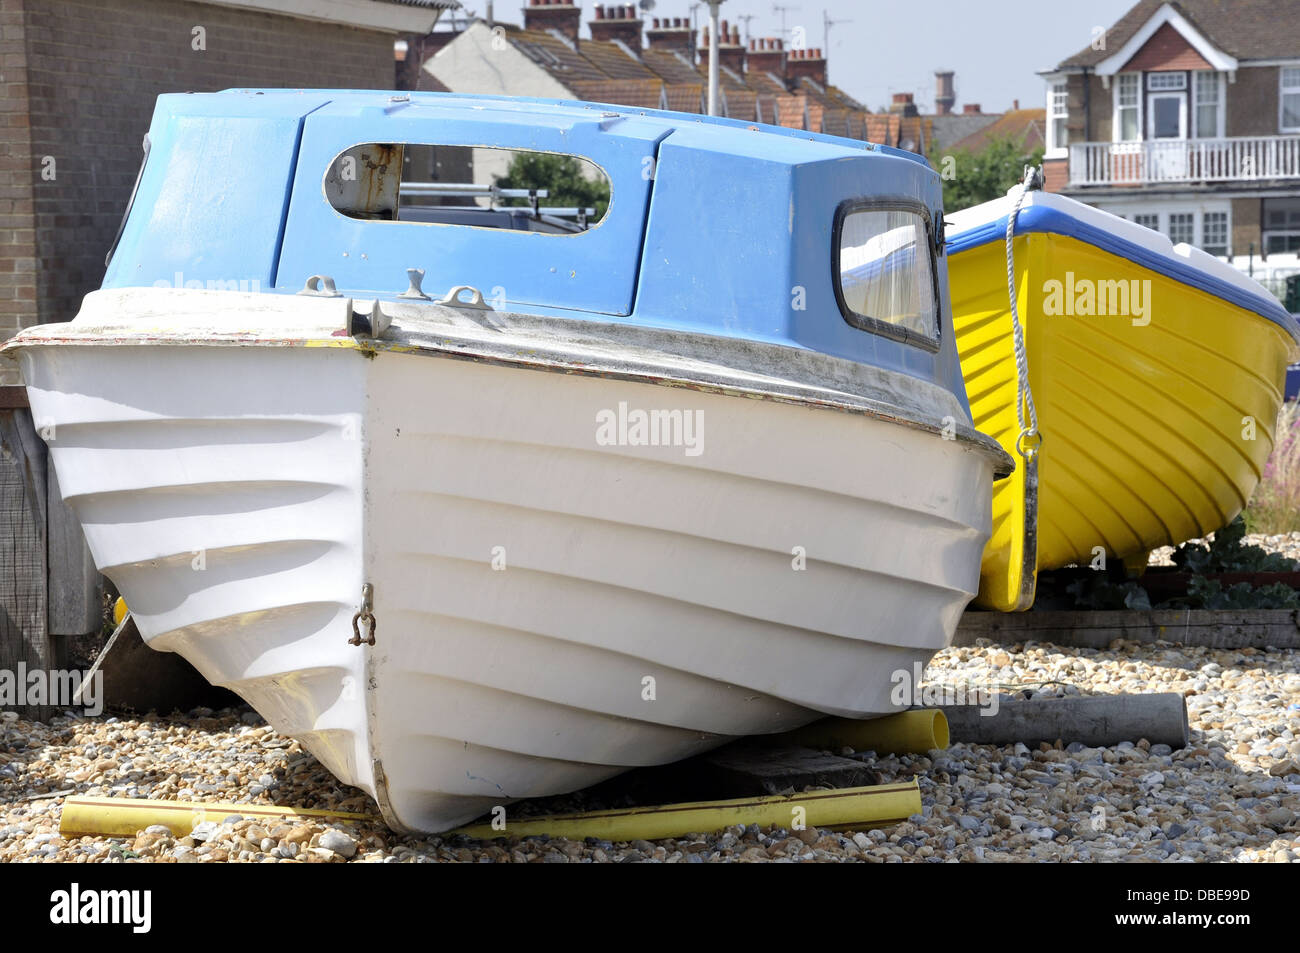 Bateau bleu et blanc sur la plage de galets avec bateau jaune derrière Banque D'Images